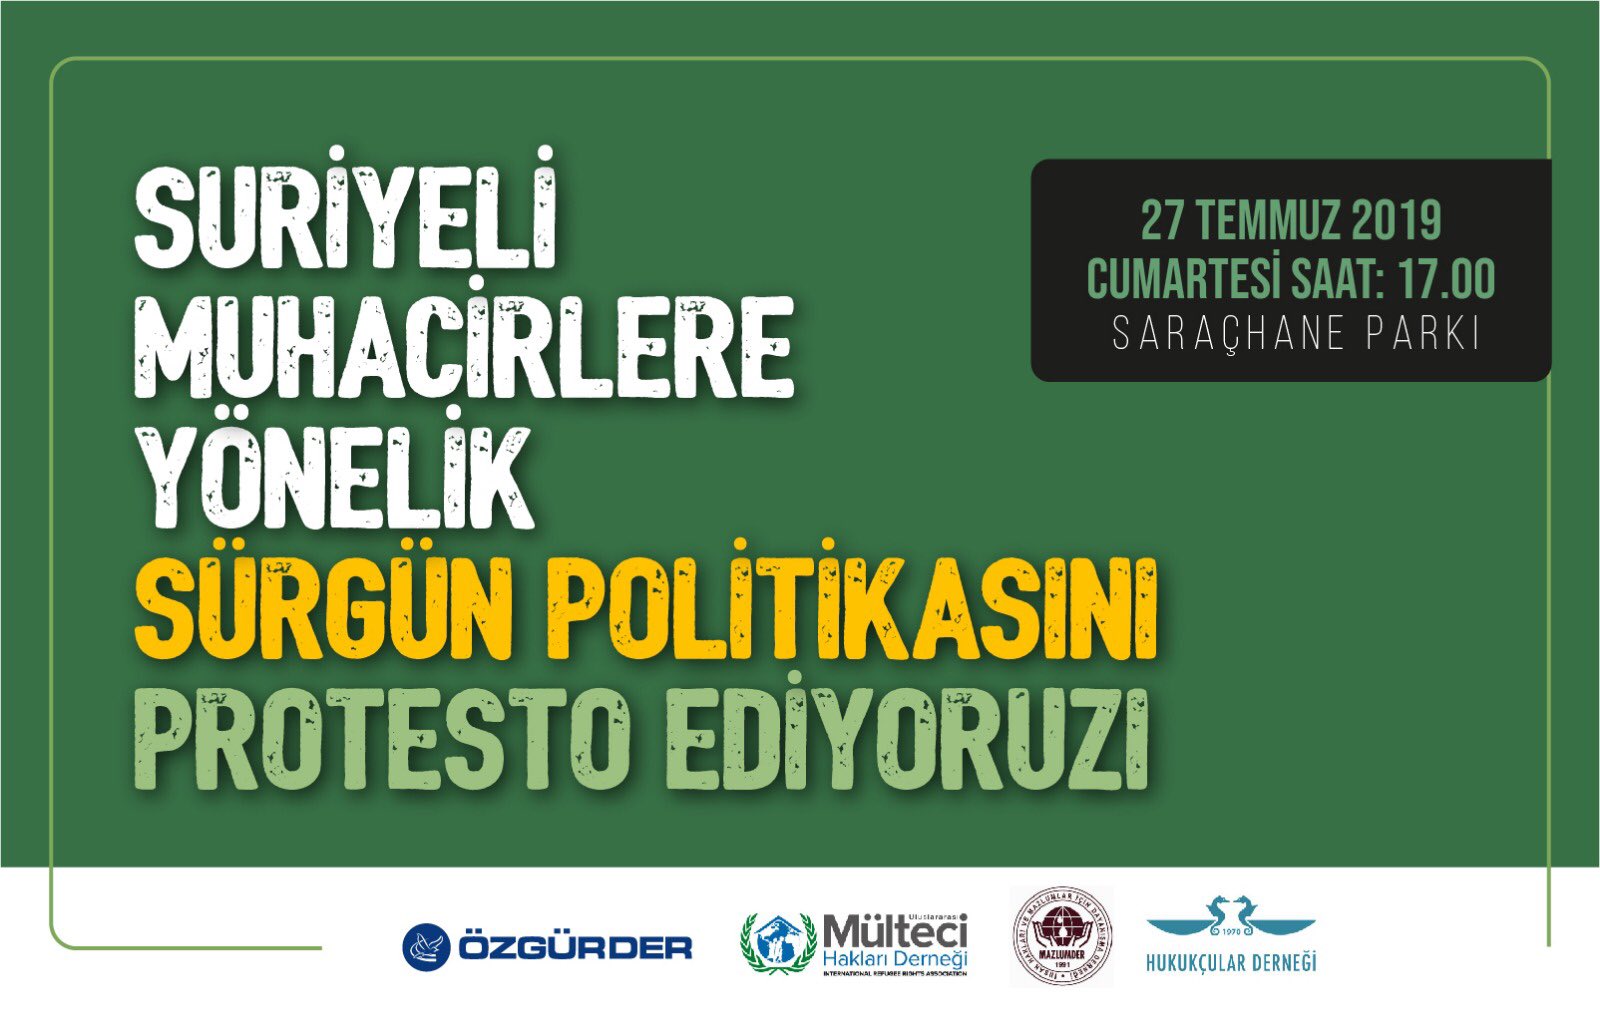 جمعيات تركية تدعو للتظاهر في إسطنبول احتجاجاً على “الممارسات غير القانونية” ضد اللاجئين السوريين